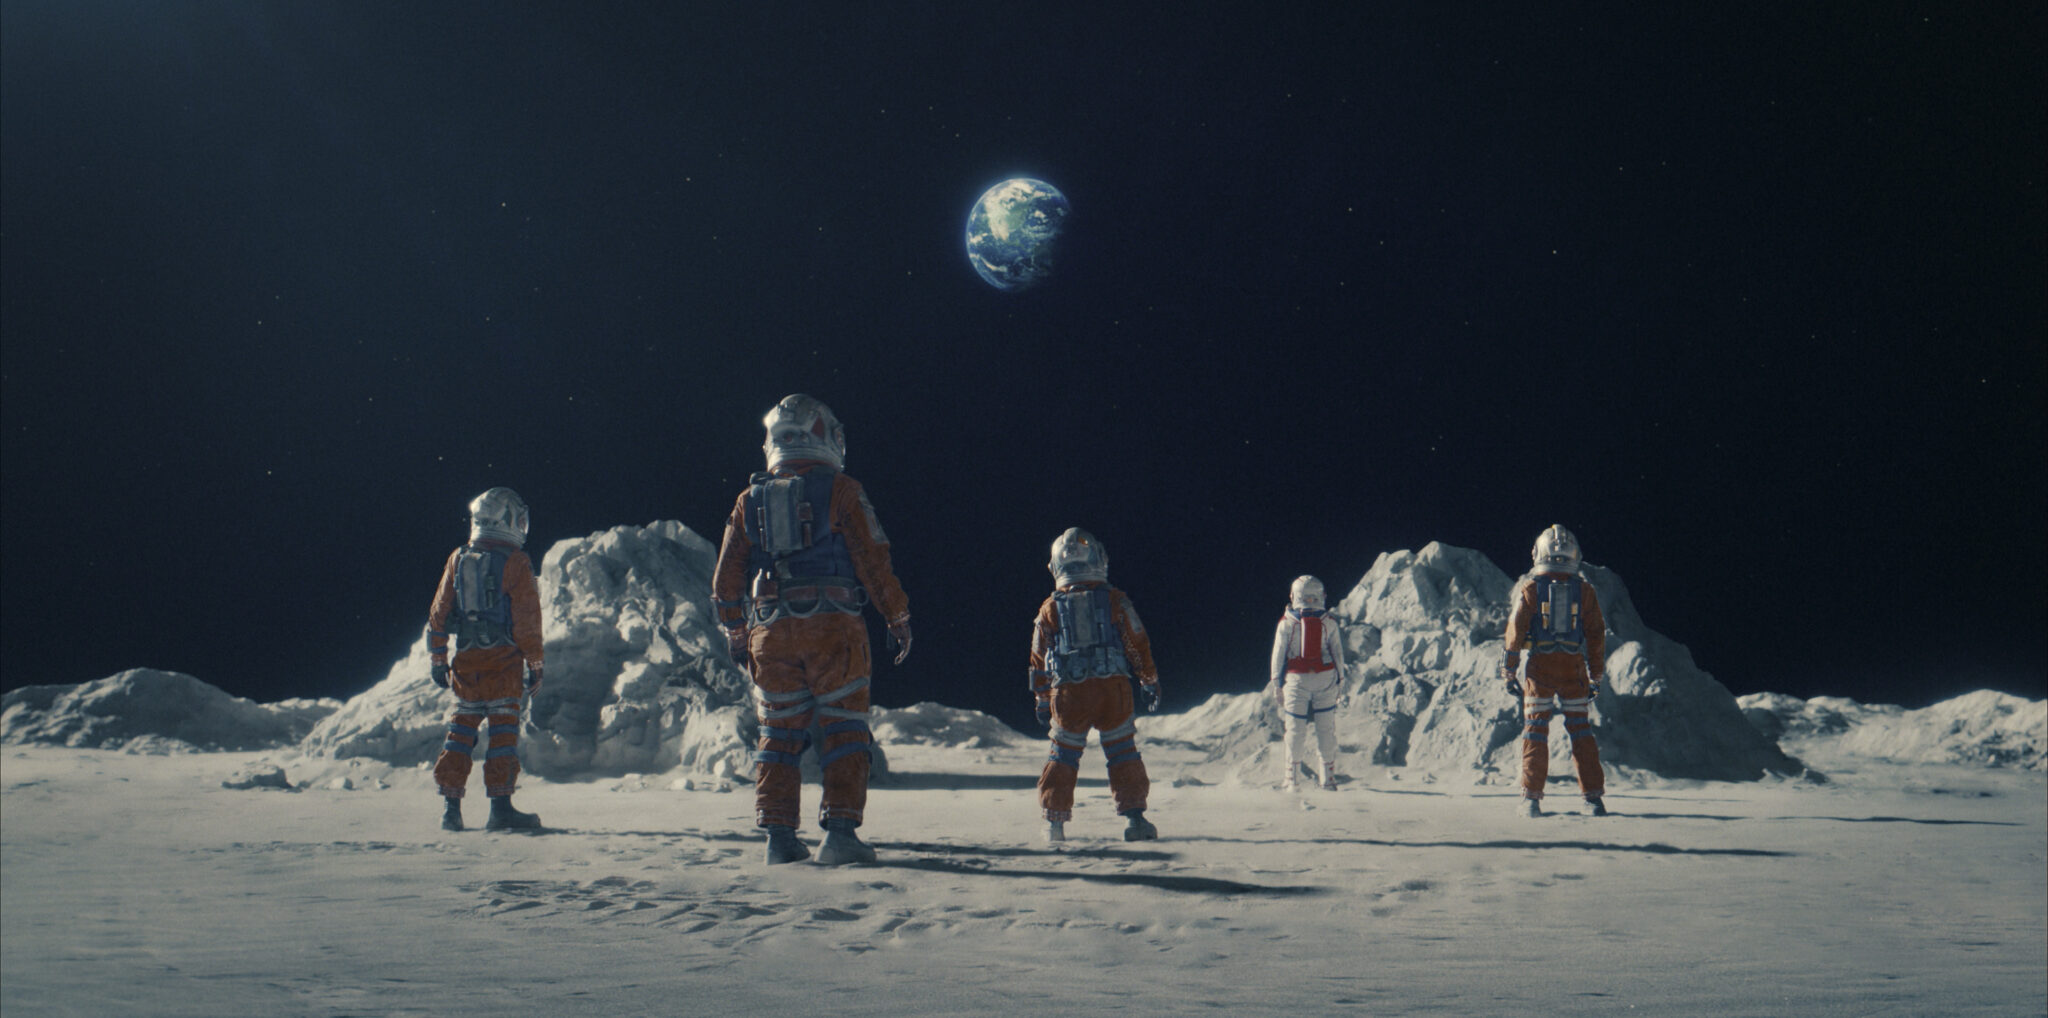 Ein Bild auf der Mondoberfläche mit 5 Astronauten in orangen Outfits. Crater